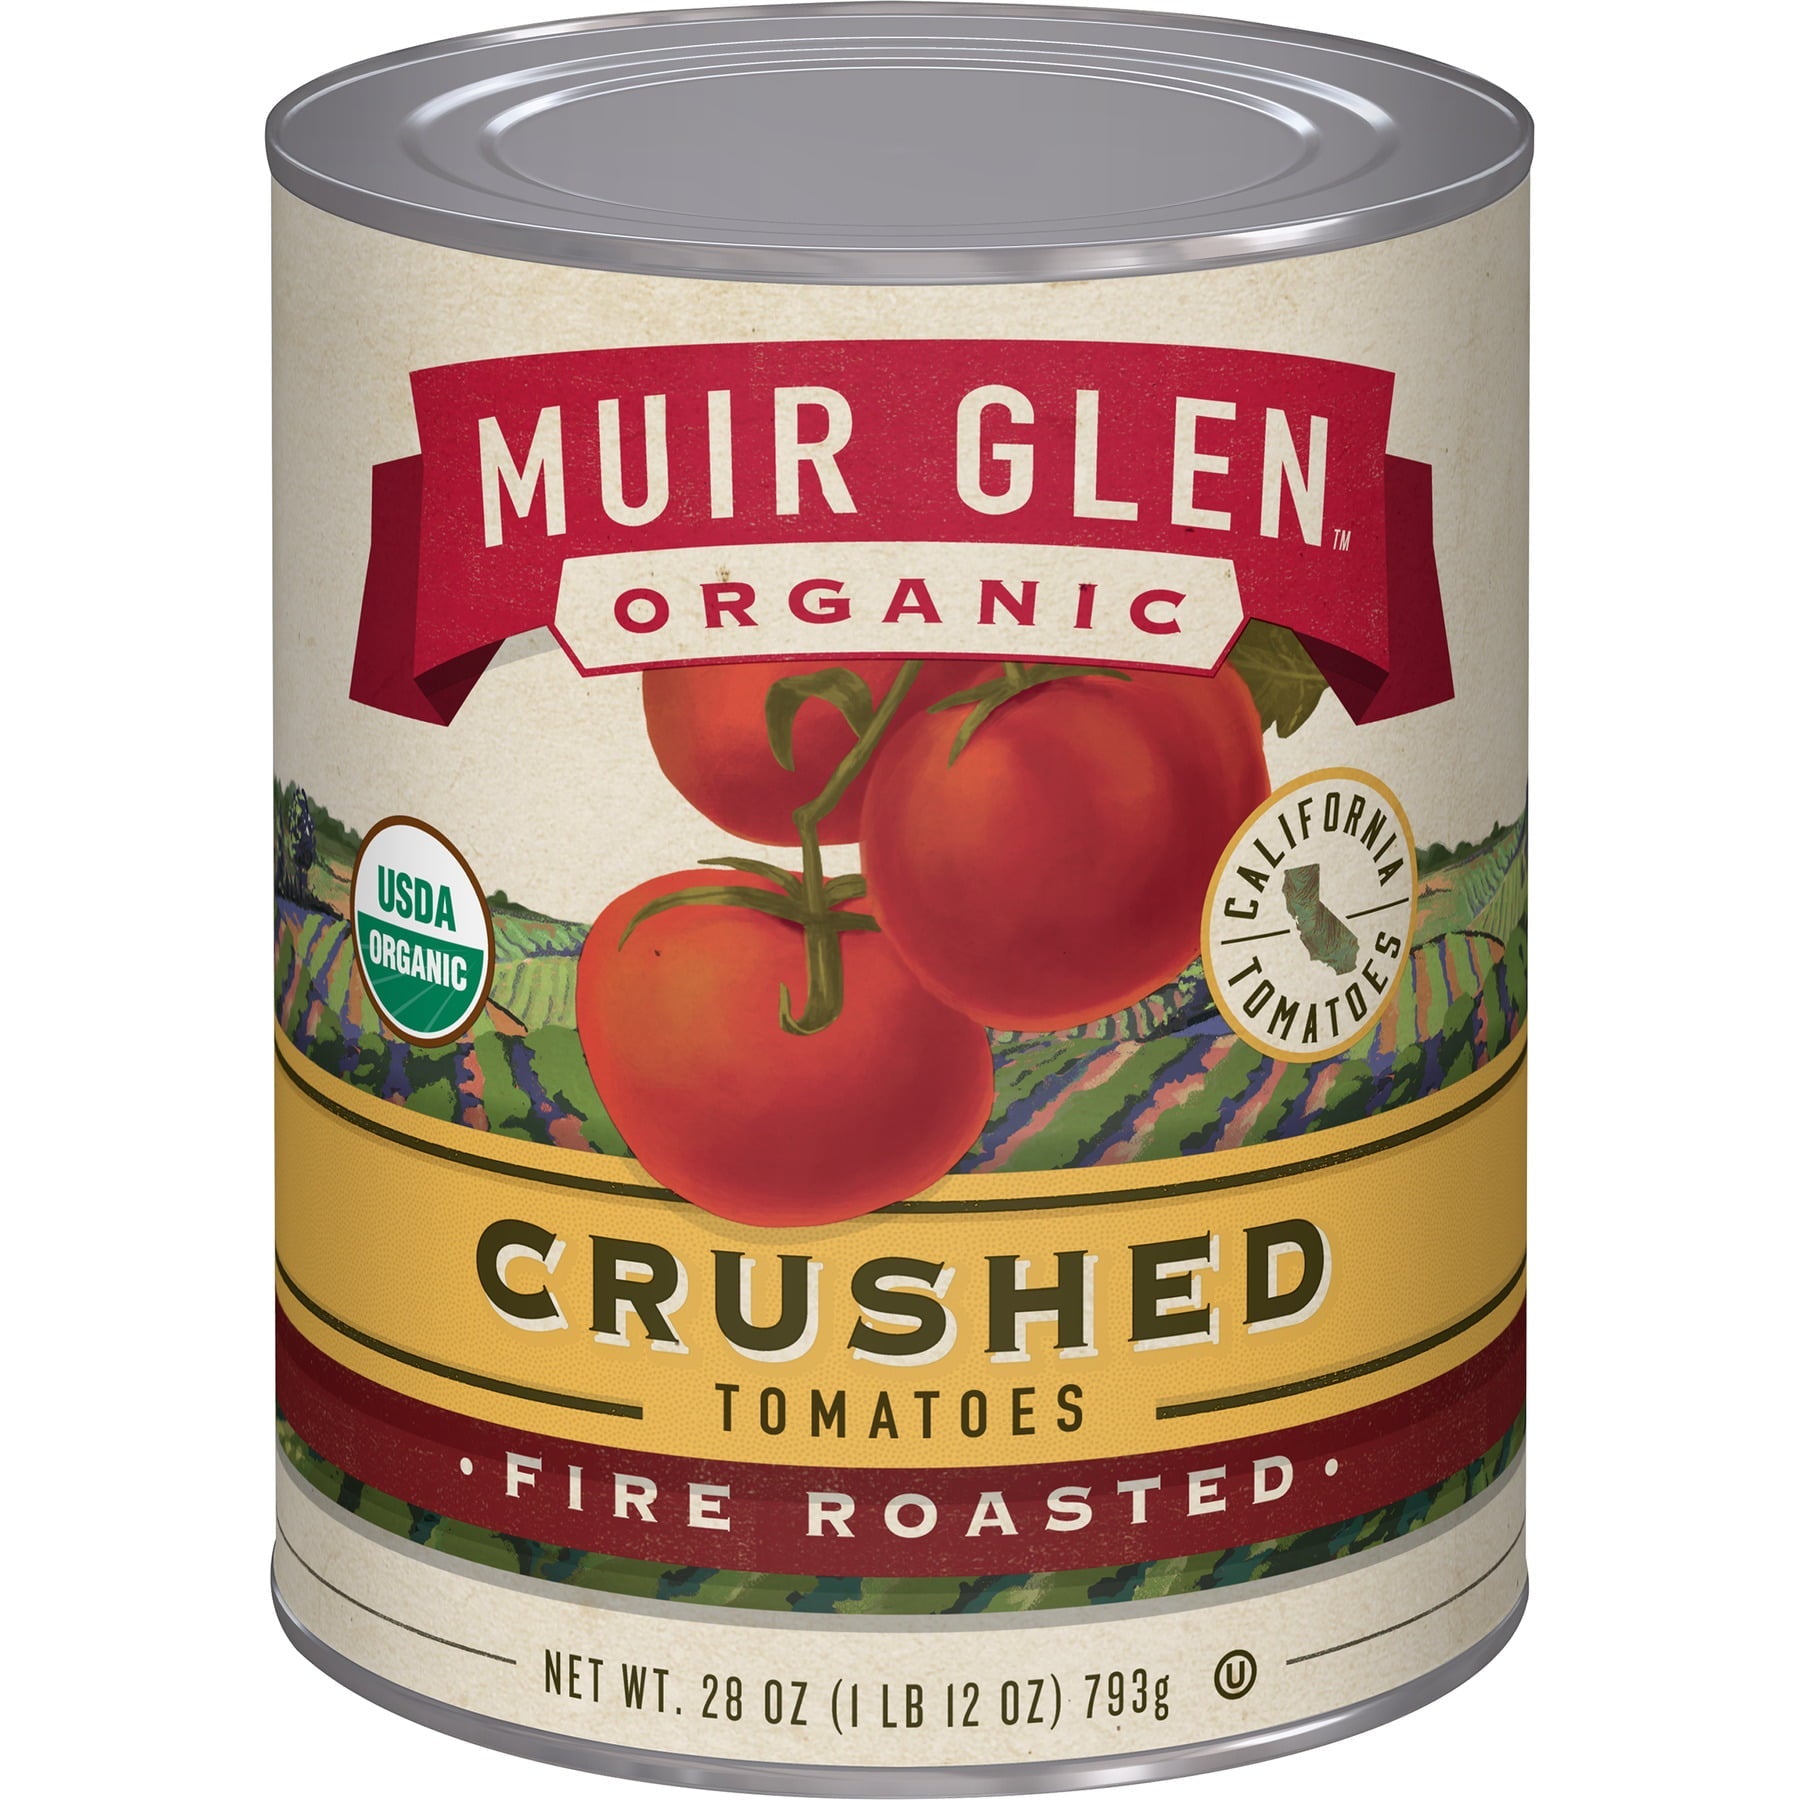 Muir Glen organic Tomatoes Fire Roasted Crushed 28 Oz